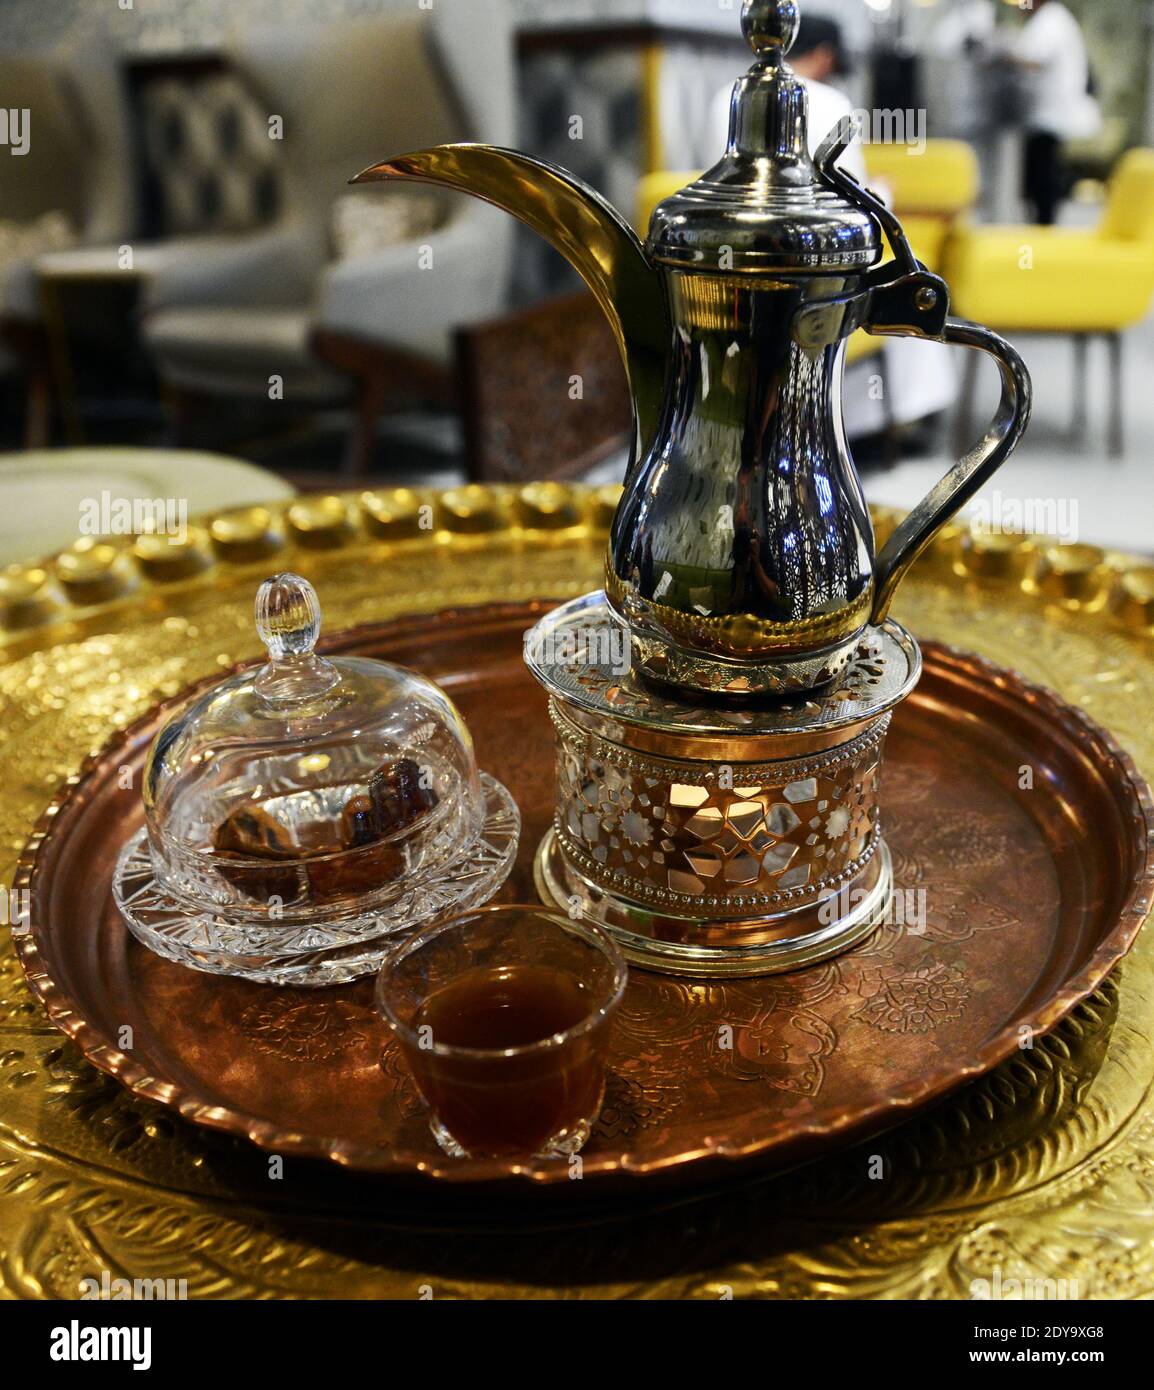 Traditioneller omanischer Kaffee in einer traditionellen Kanne serviert. Stockfoto